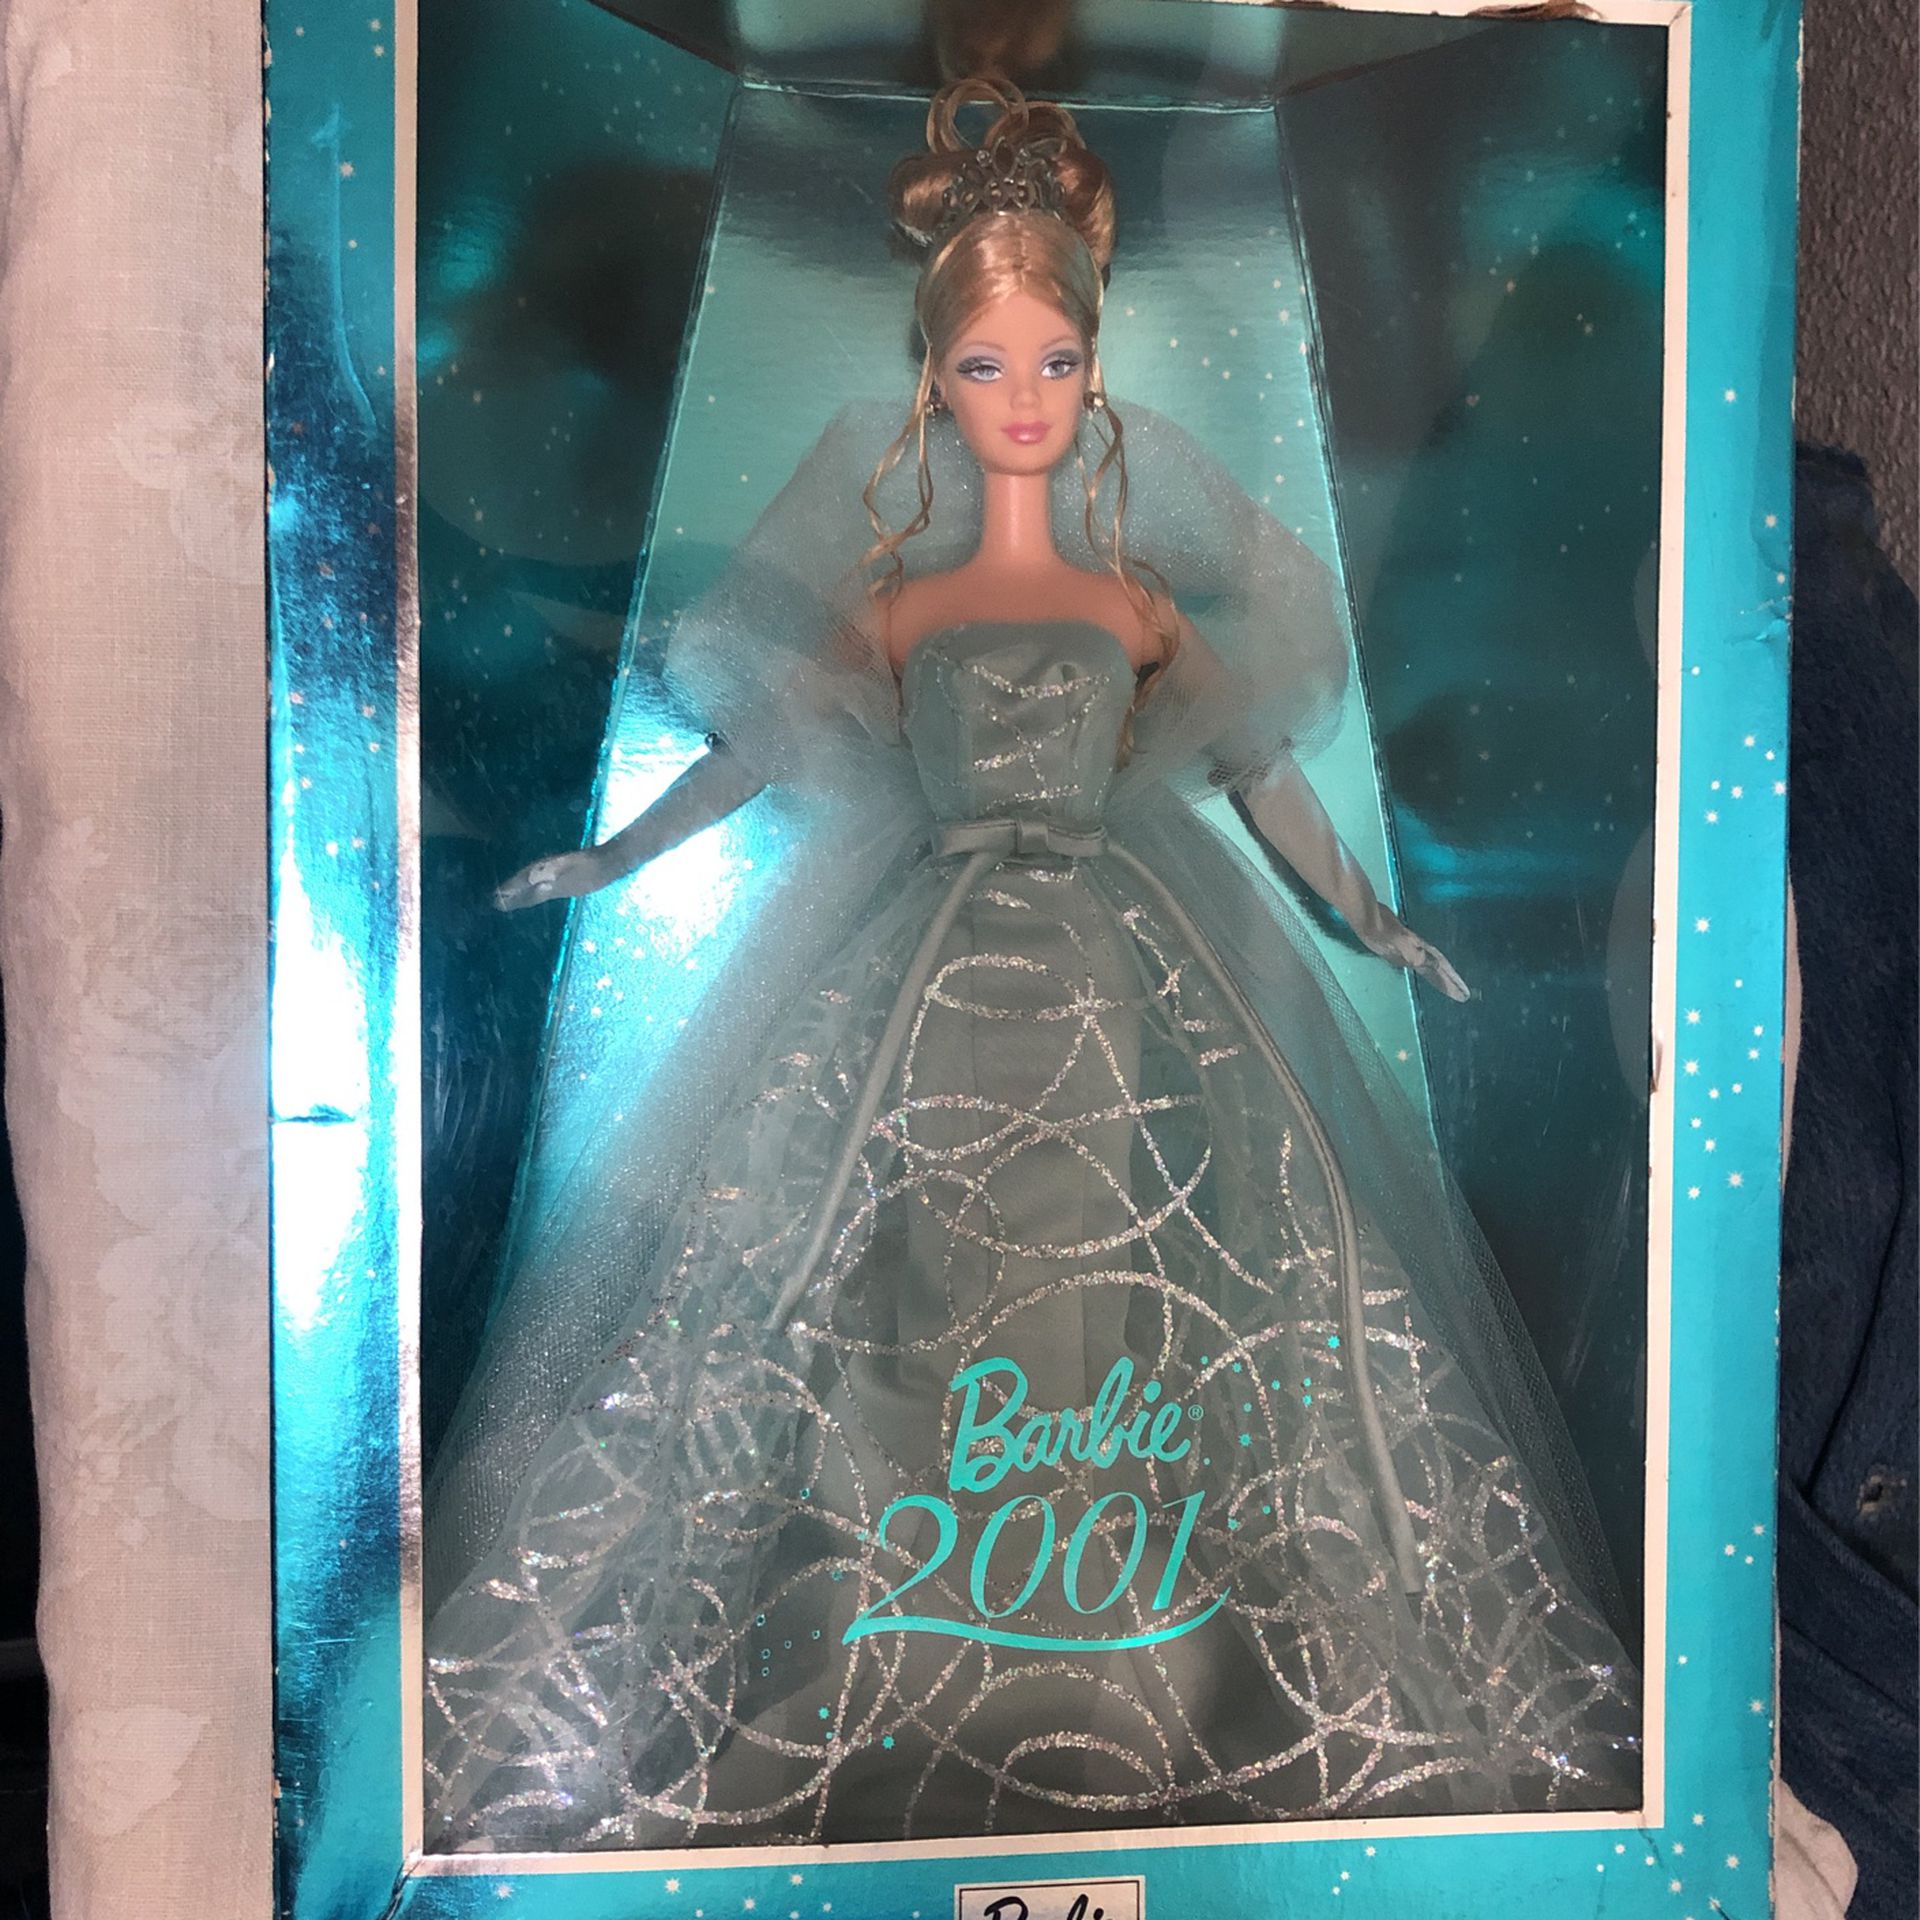 Collectors Edition Barbie 2001